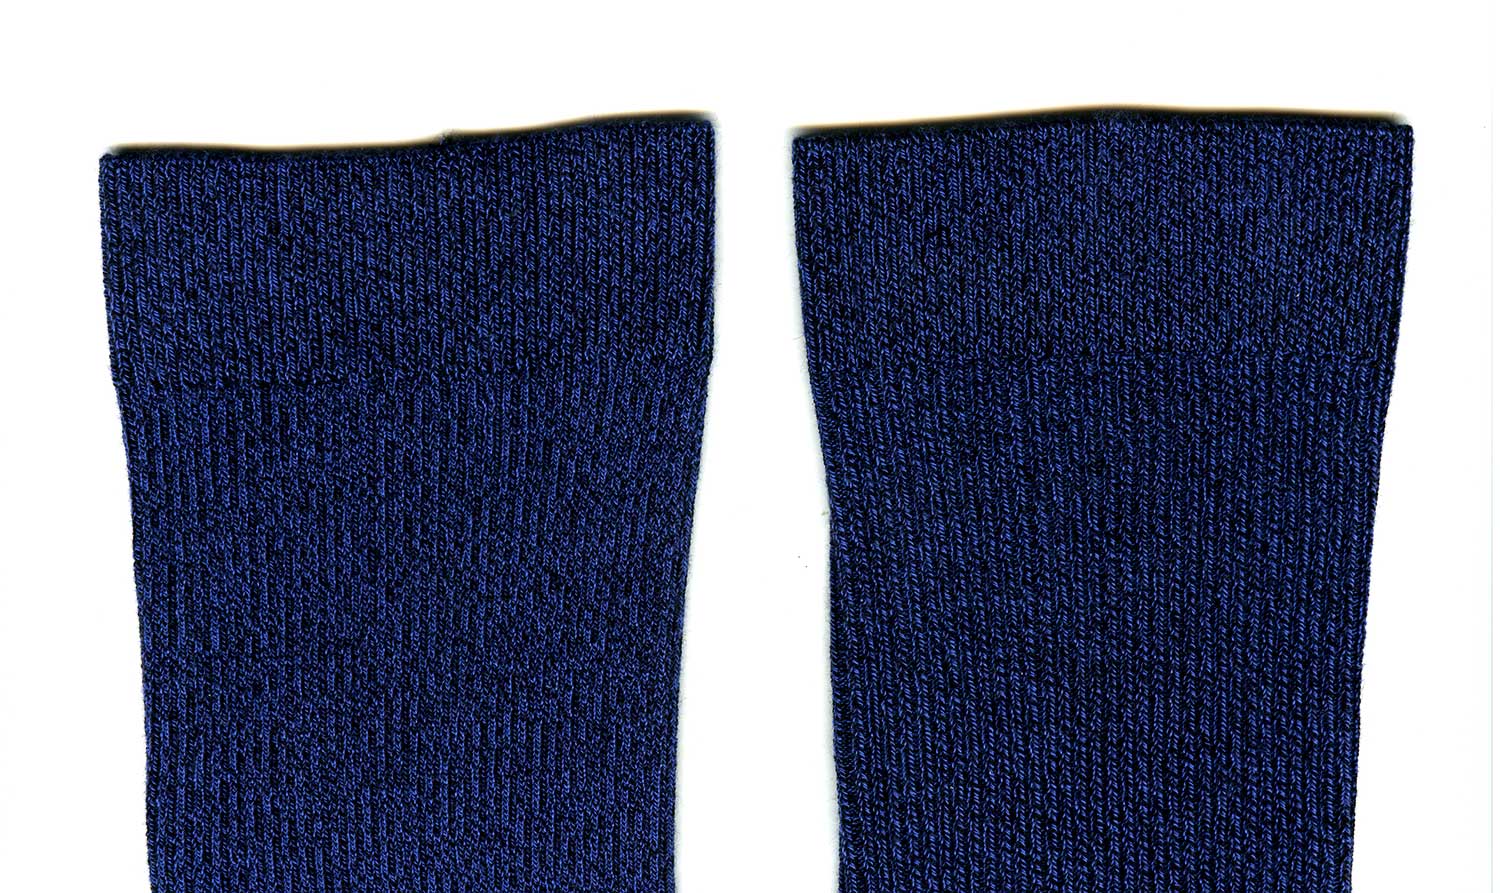 Верх носков Omsa 301 Comfort: изнанка (слева) и лицевая сторона (справа) практически неразличимы ©bracatuS